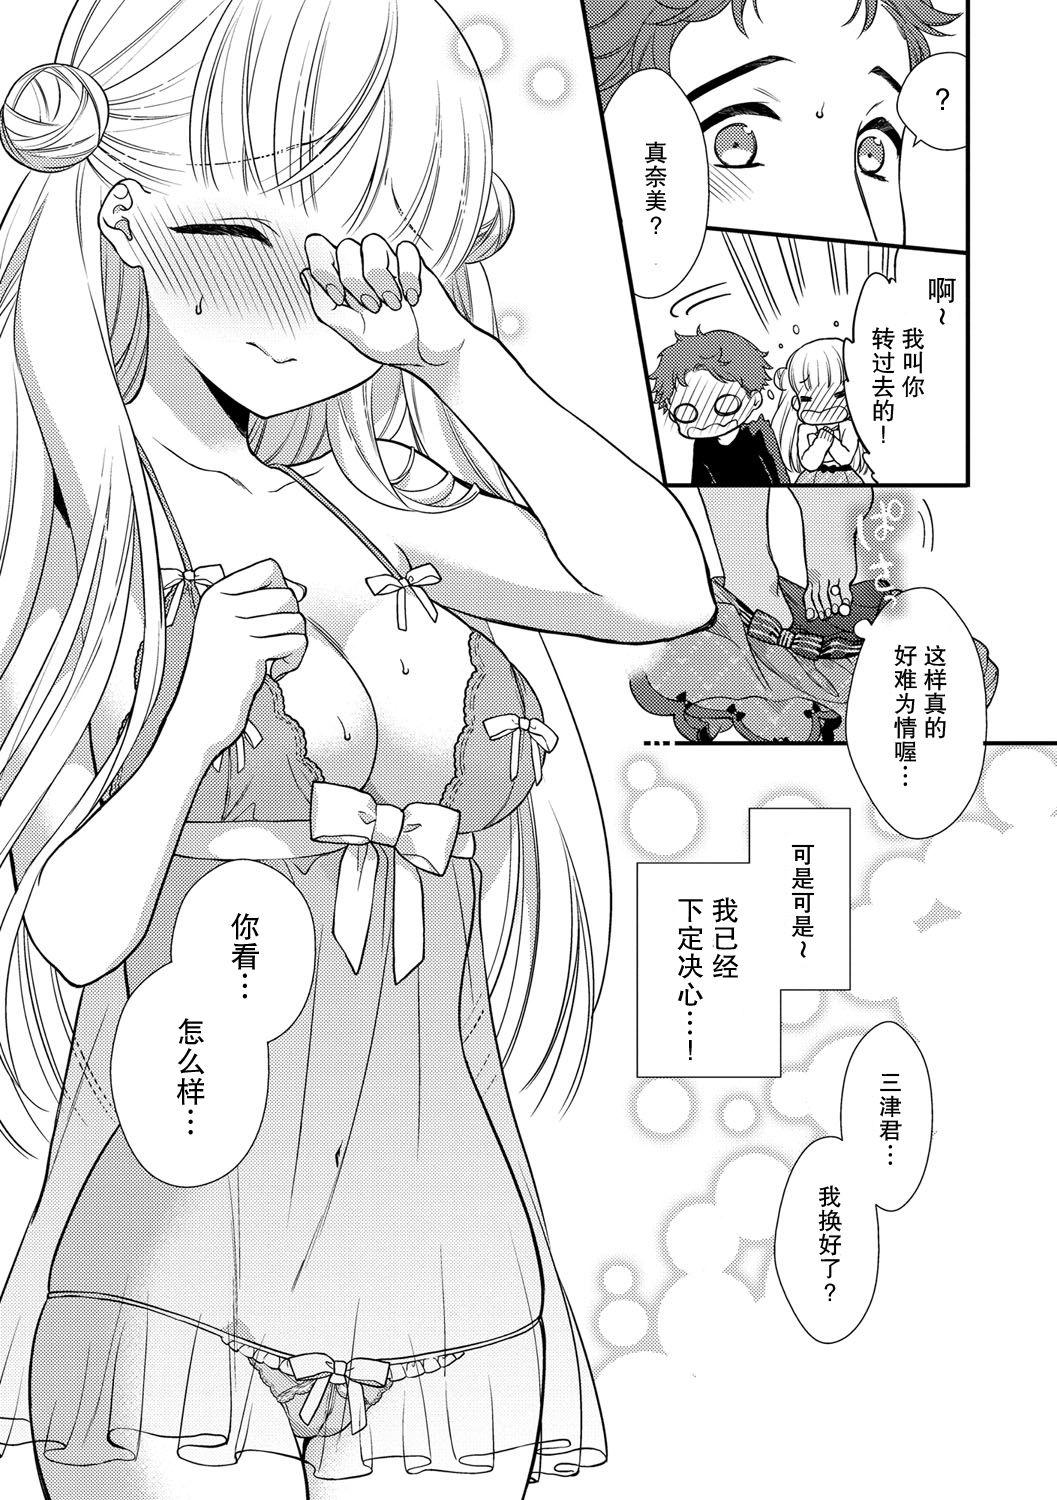 Licking Pussy Fuwafuwa Koi no baby doll Footfetish - Page 7